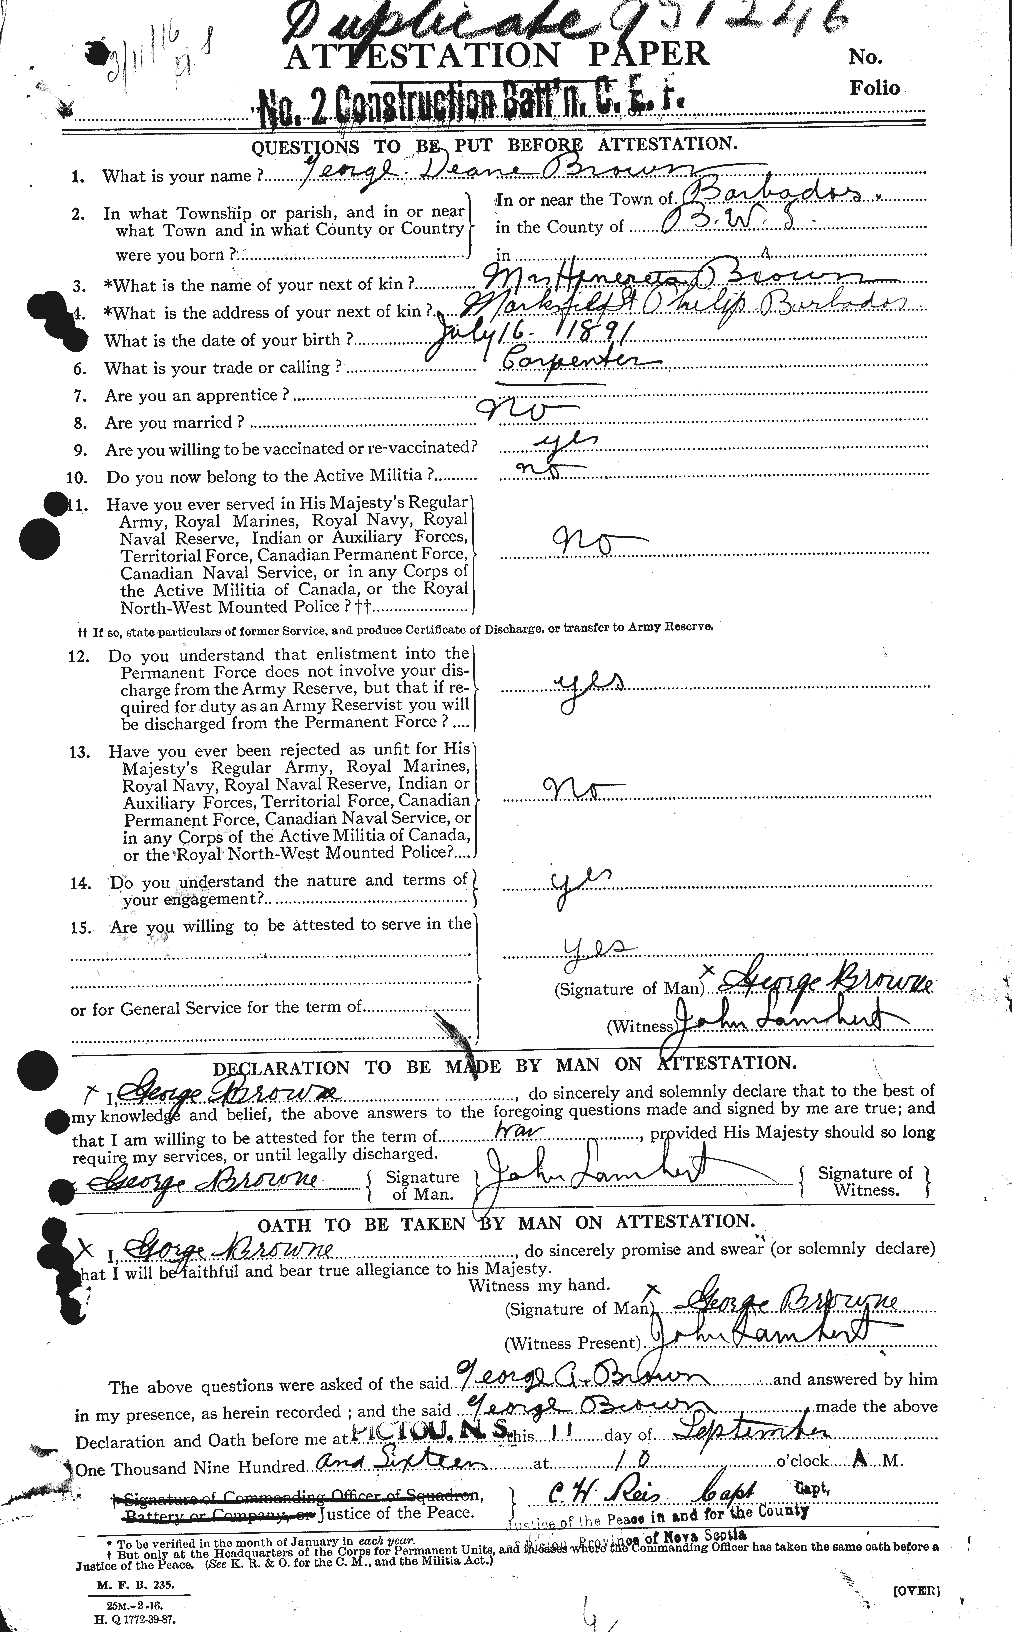 Dossiers du Personnel de la Première Guerre mondiale - CEC 267900a